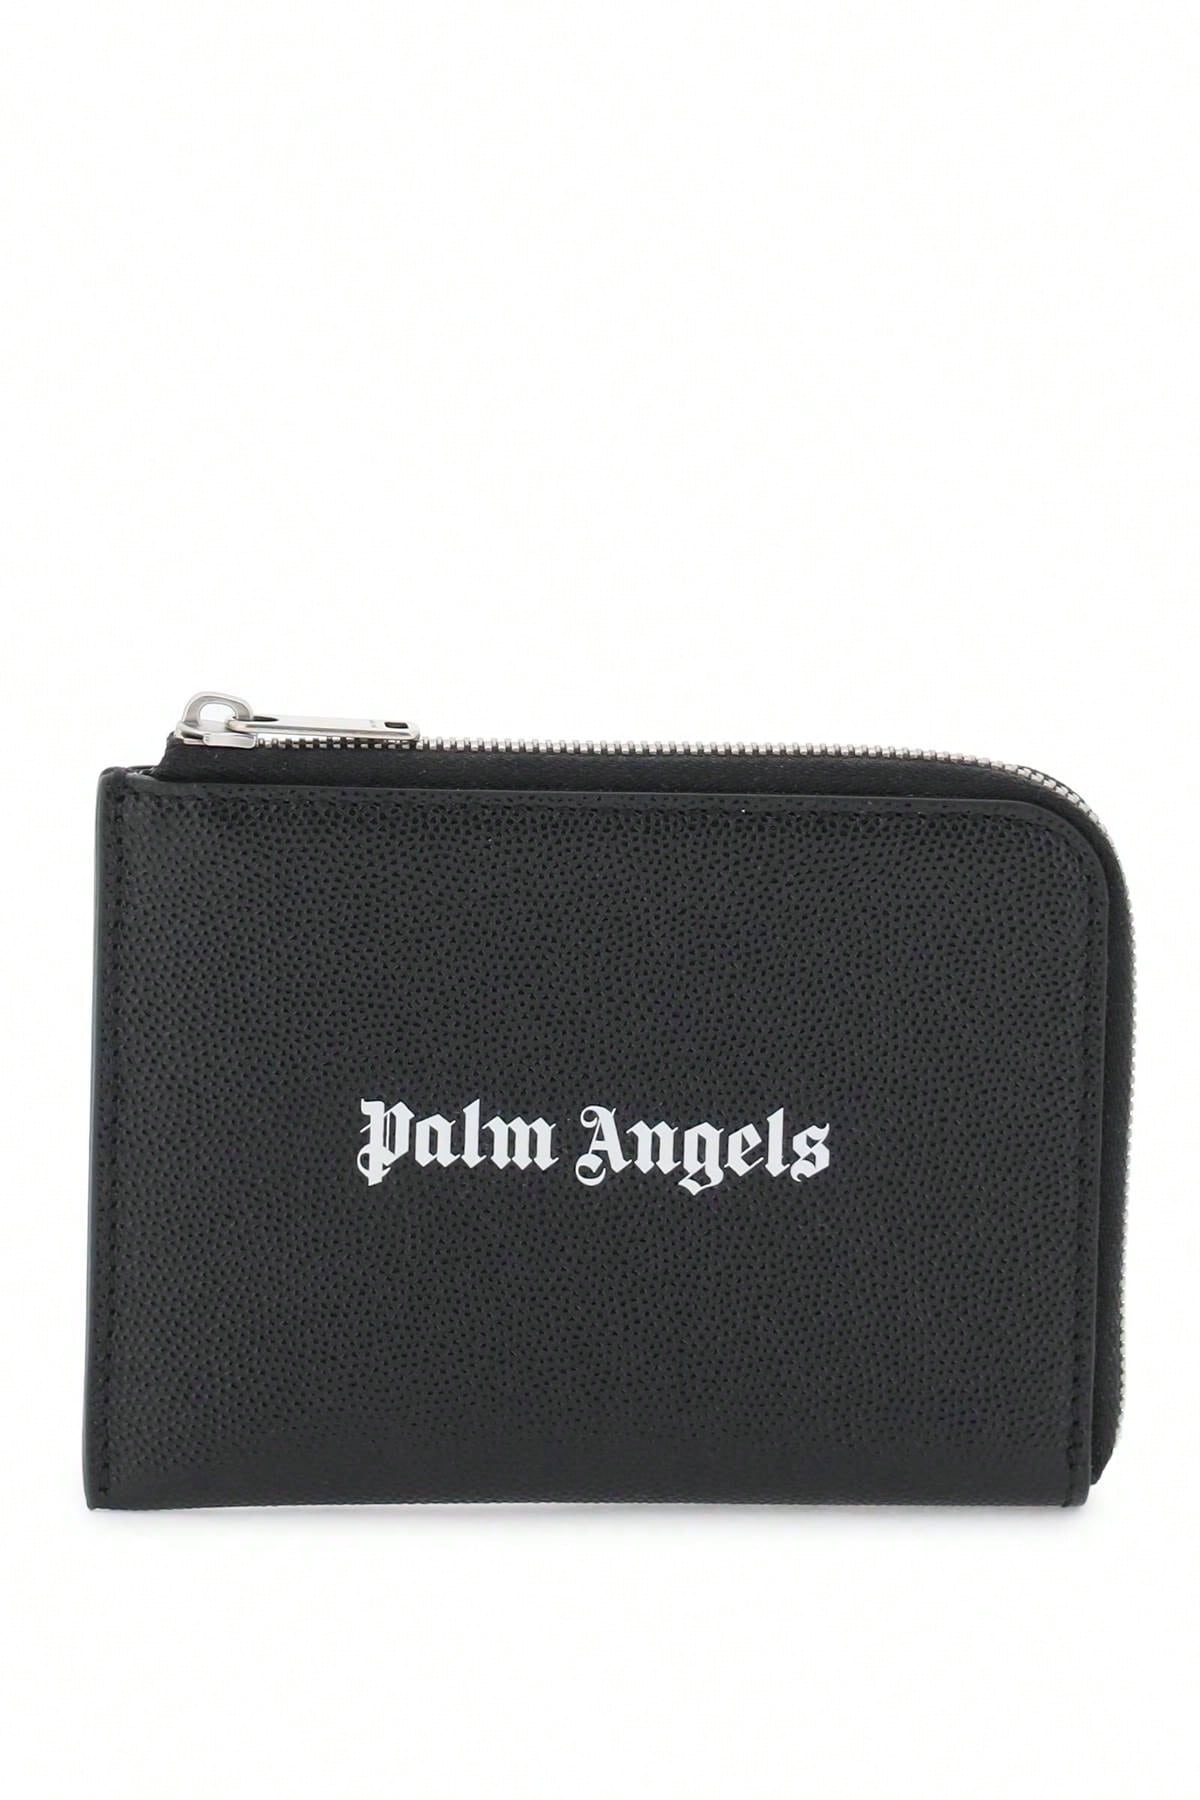 Palm Angels Миниатюрная сумка Palm Angels с выдвижным картхолдером, черный palm angels миниатюрная сумка palm angels с выдвижным картхолдером черный